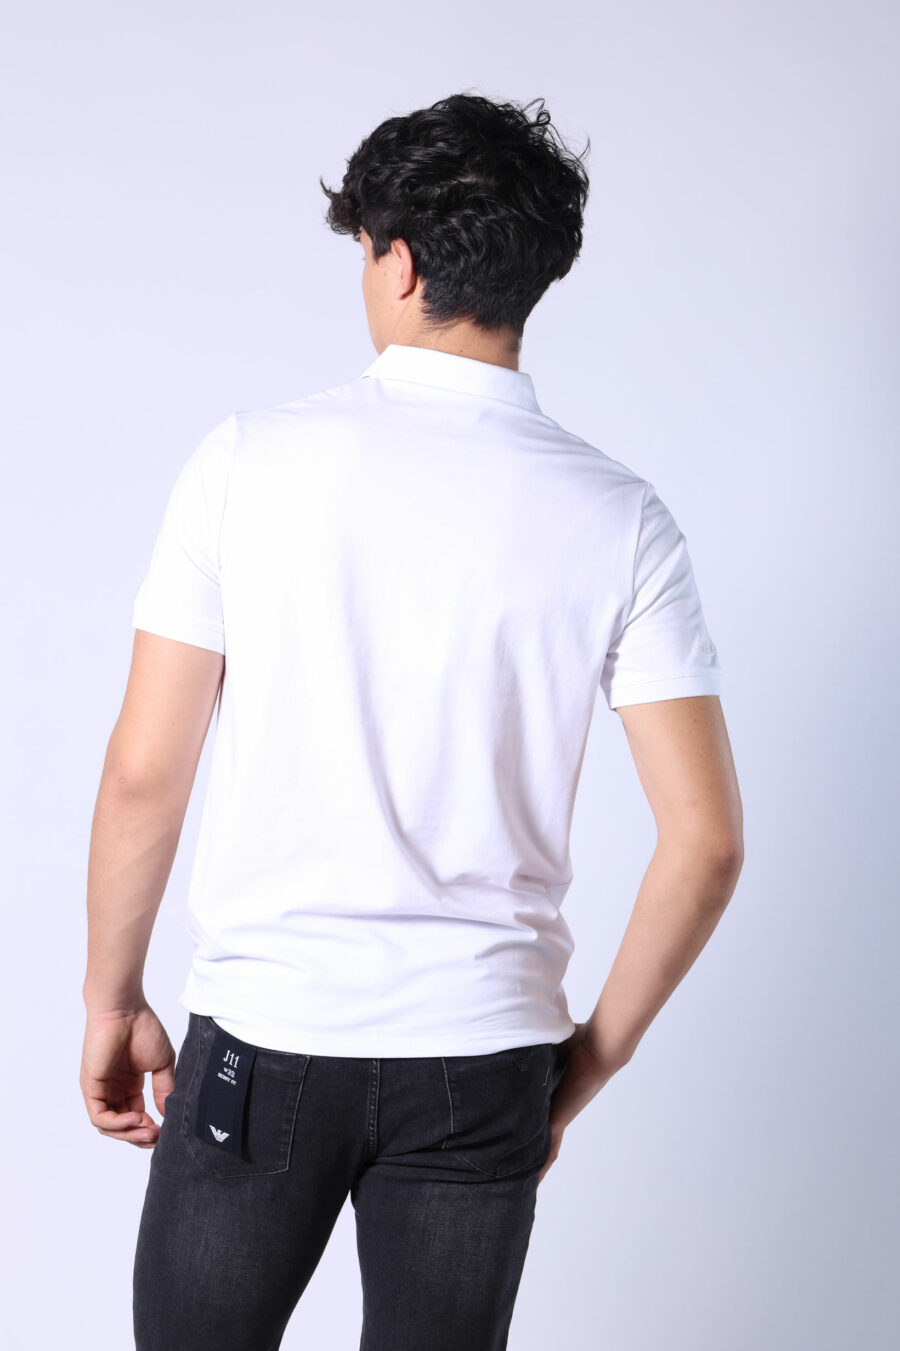 Pólo branco com mini-logotipo monocromático - Untitled Catalog 05726